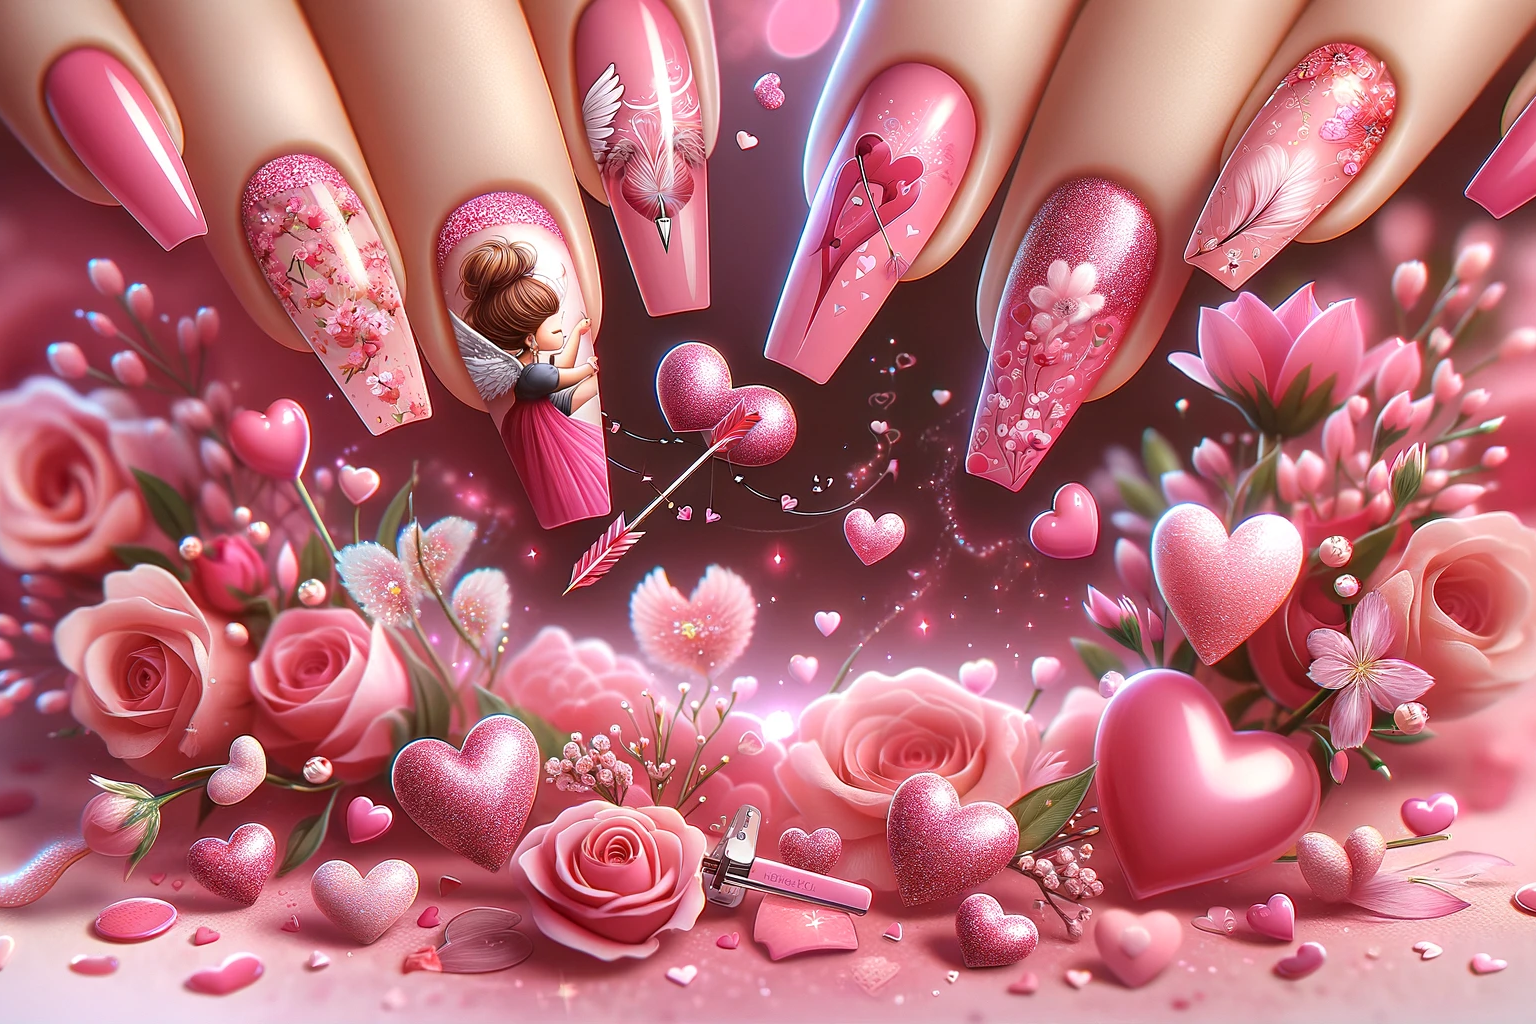 Różowe paznokcie na Walentynki 2024 z motywami serc, strzał Kupidyna i delikatnych kwiatów, na tle baśniowej walentynkowej sceny z pływającymi sercami i kwiatowymi wzorami, idealne dla artykułu o romantycznych stylizacjach paznokci